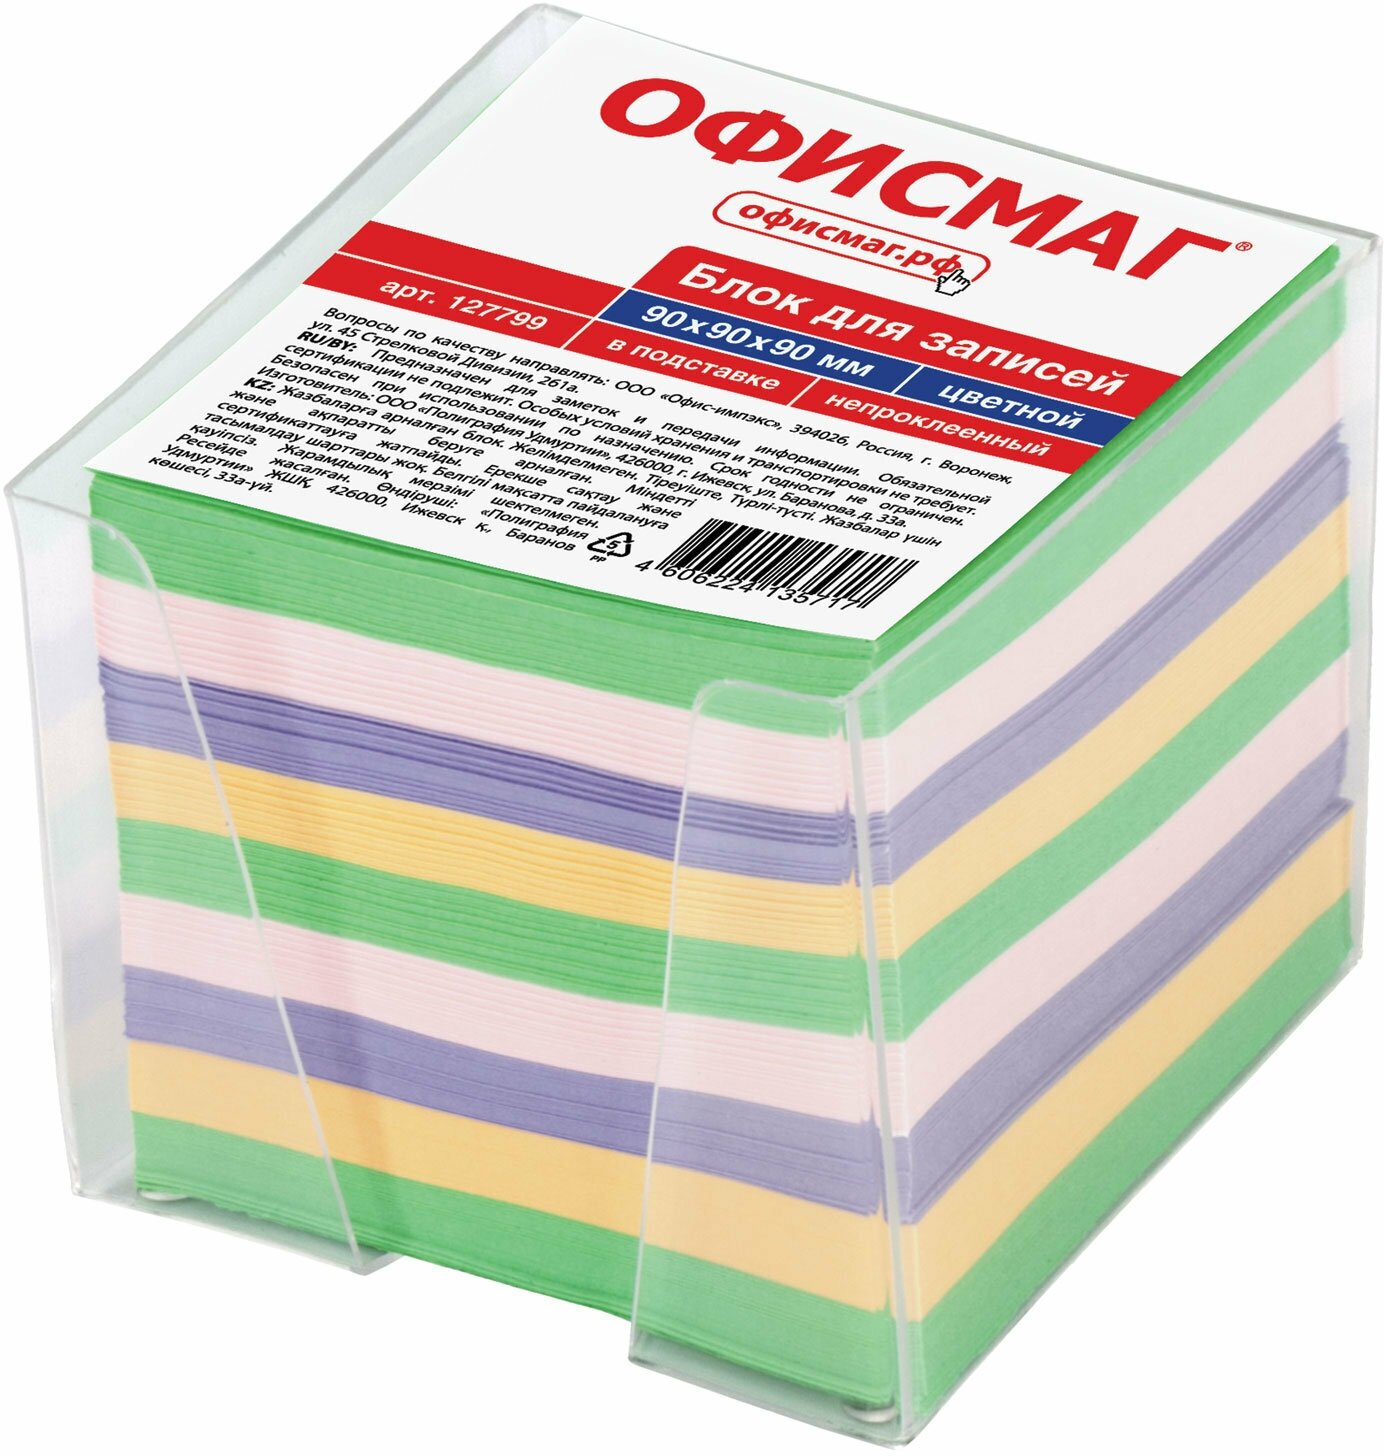 Блок для записей Офисмаг в подставке прозрачной, куб 9х9х9 см, цветной (127799)